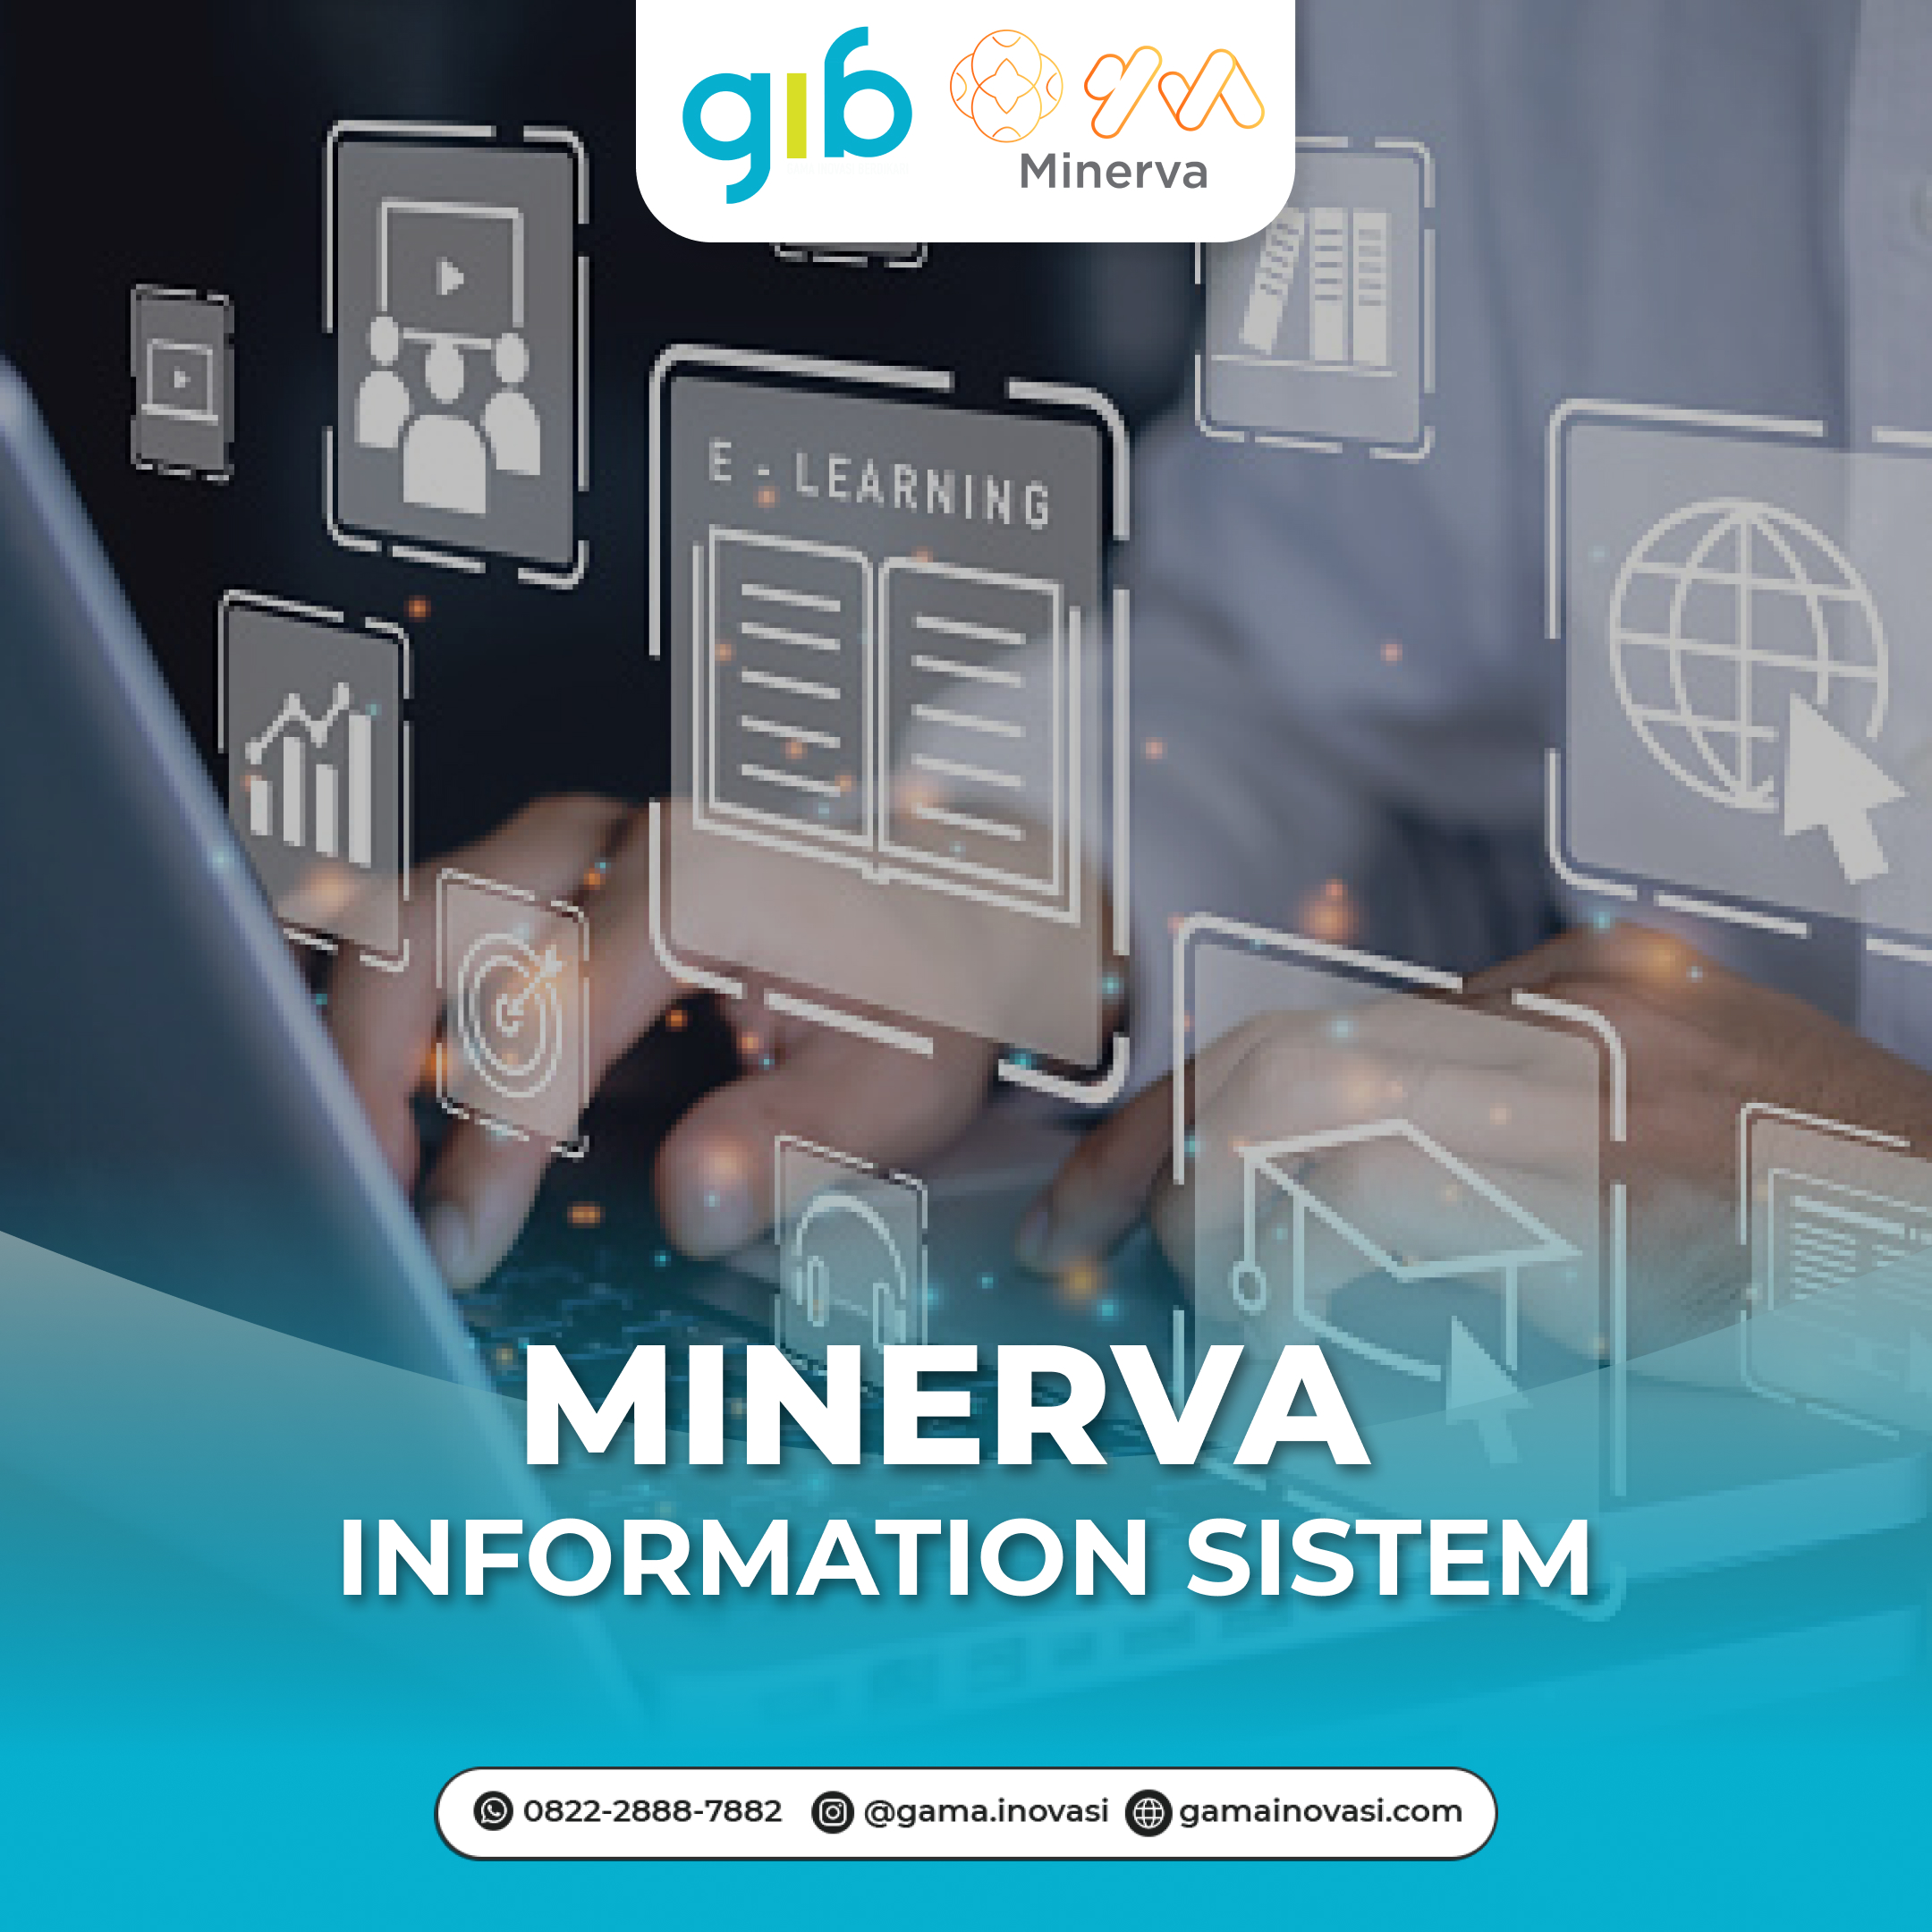 Minerva: Information System